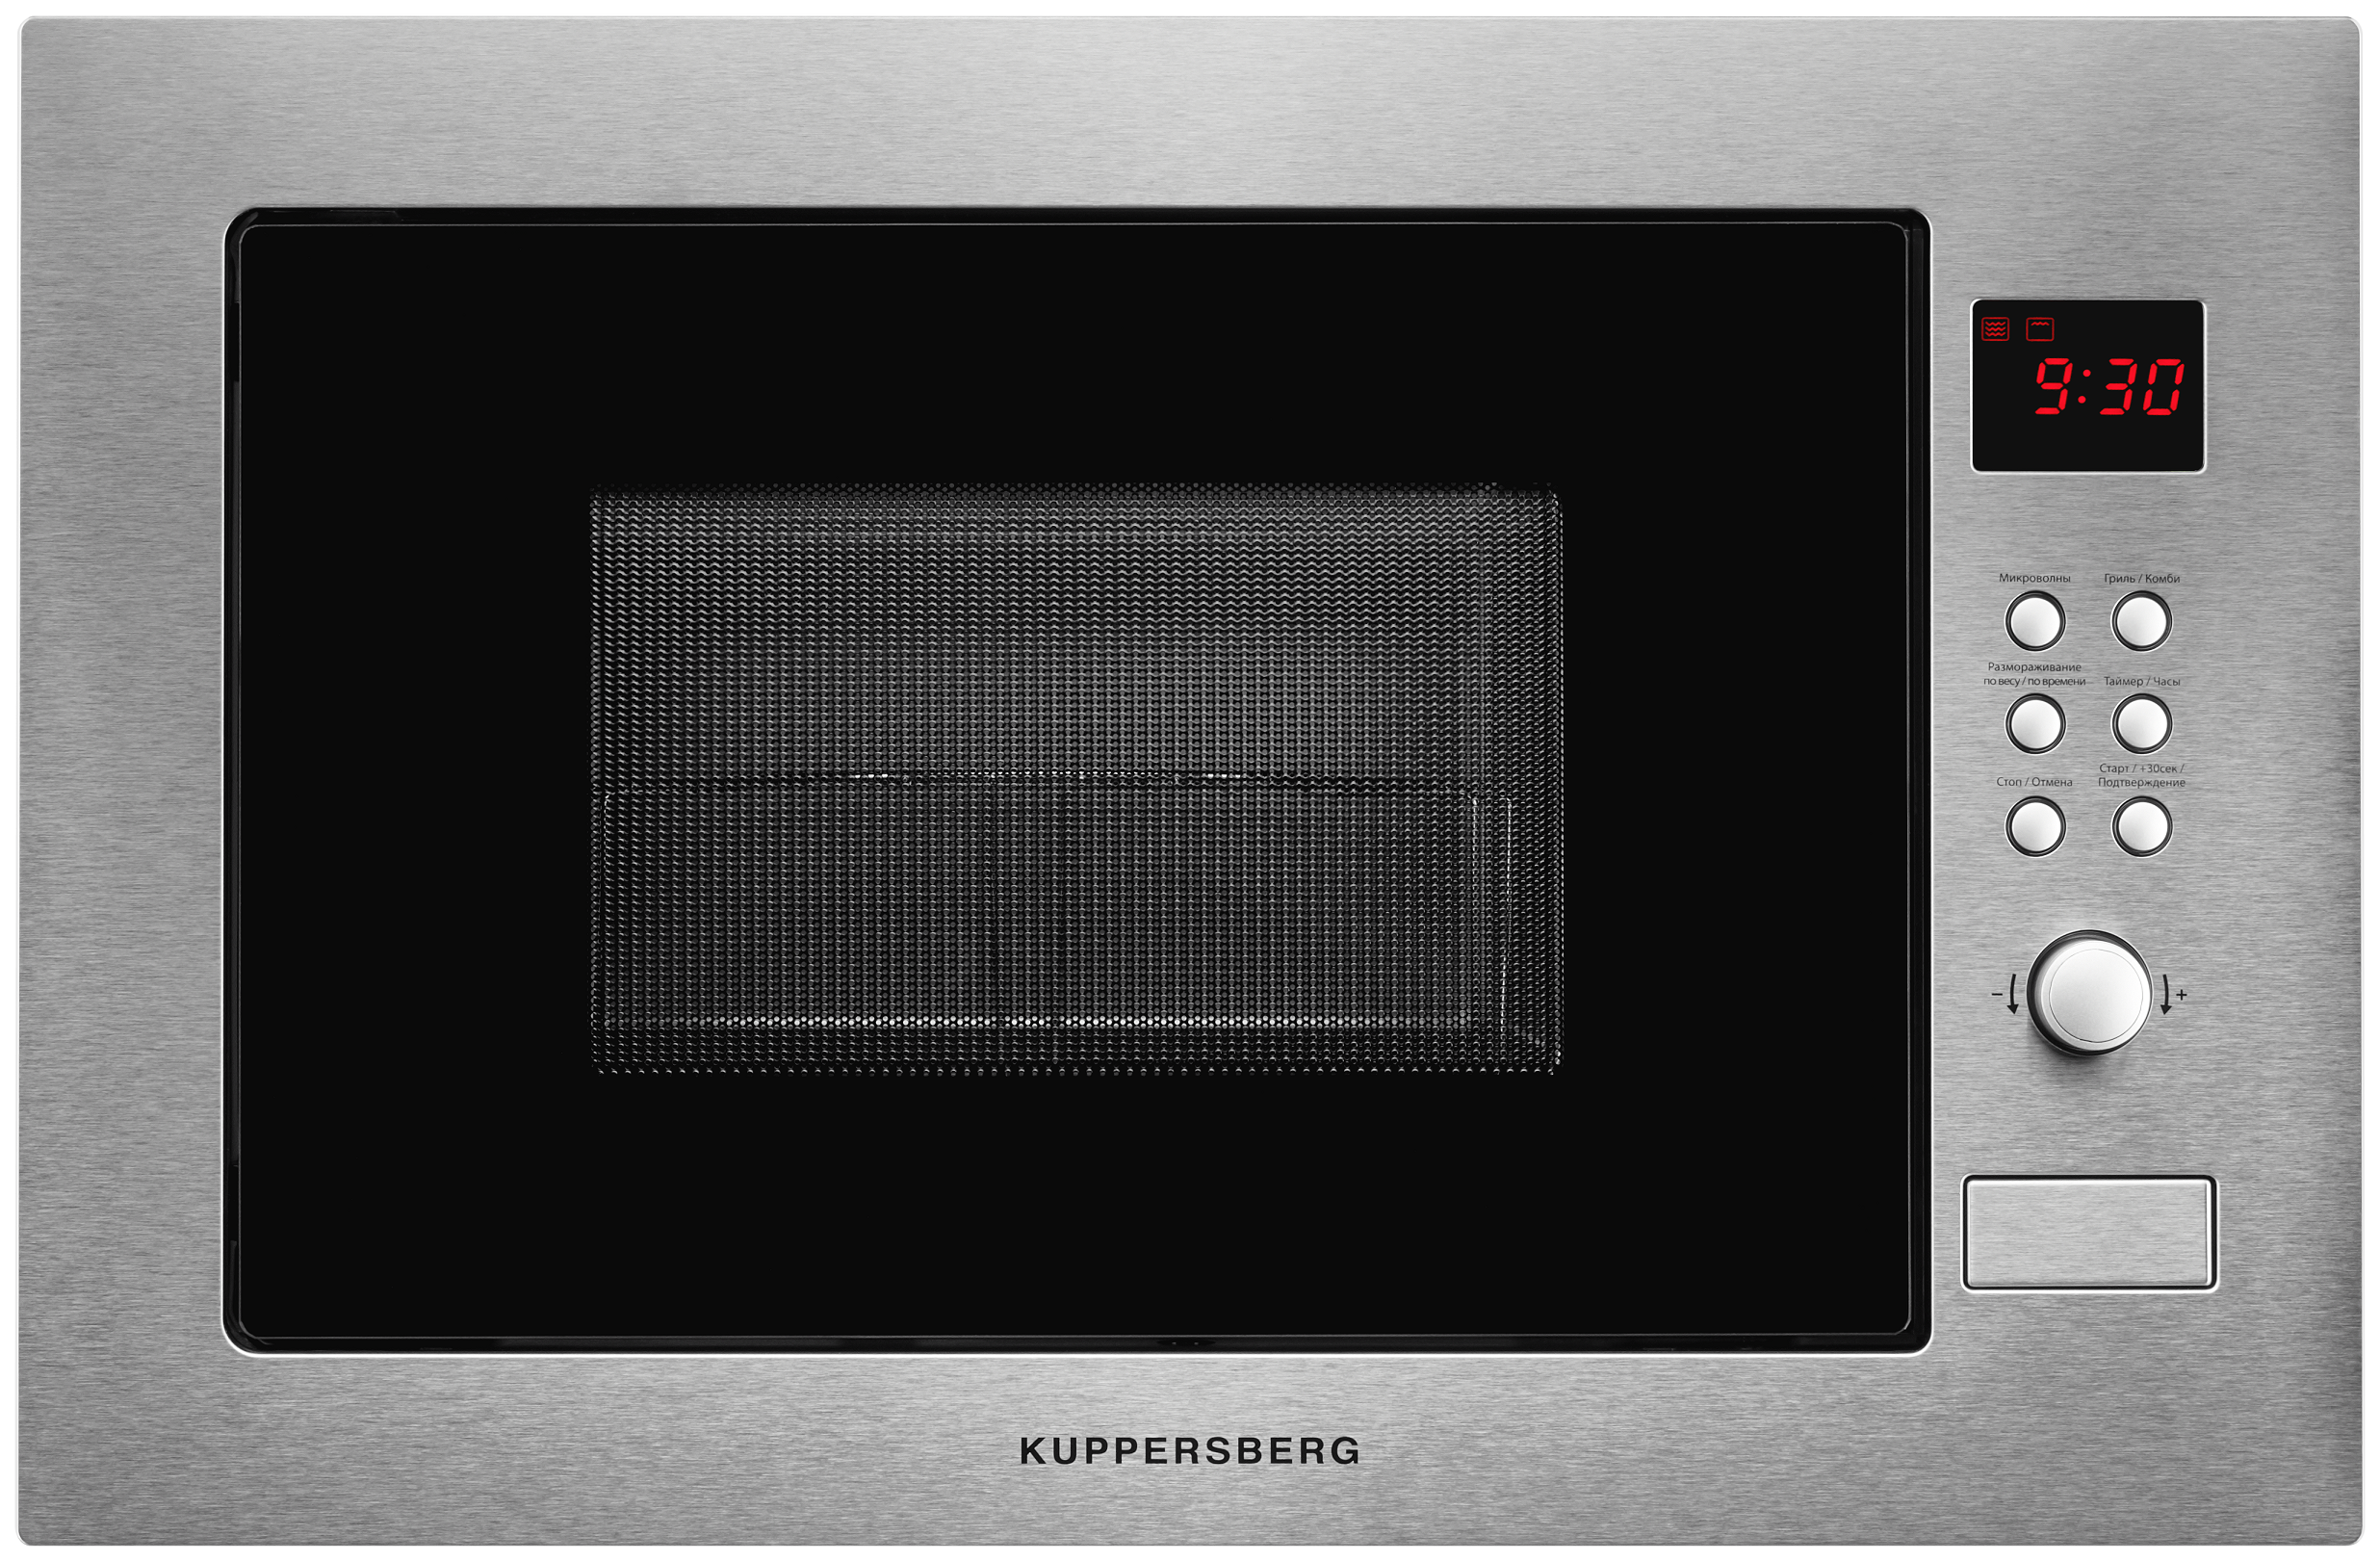 Встраиваемая микроволновая печь KUPPERSBERG HMW 635 серебристая встраиваемая микроволновая печь krona laune 60 s k серебристая черная